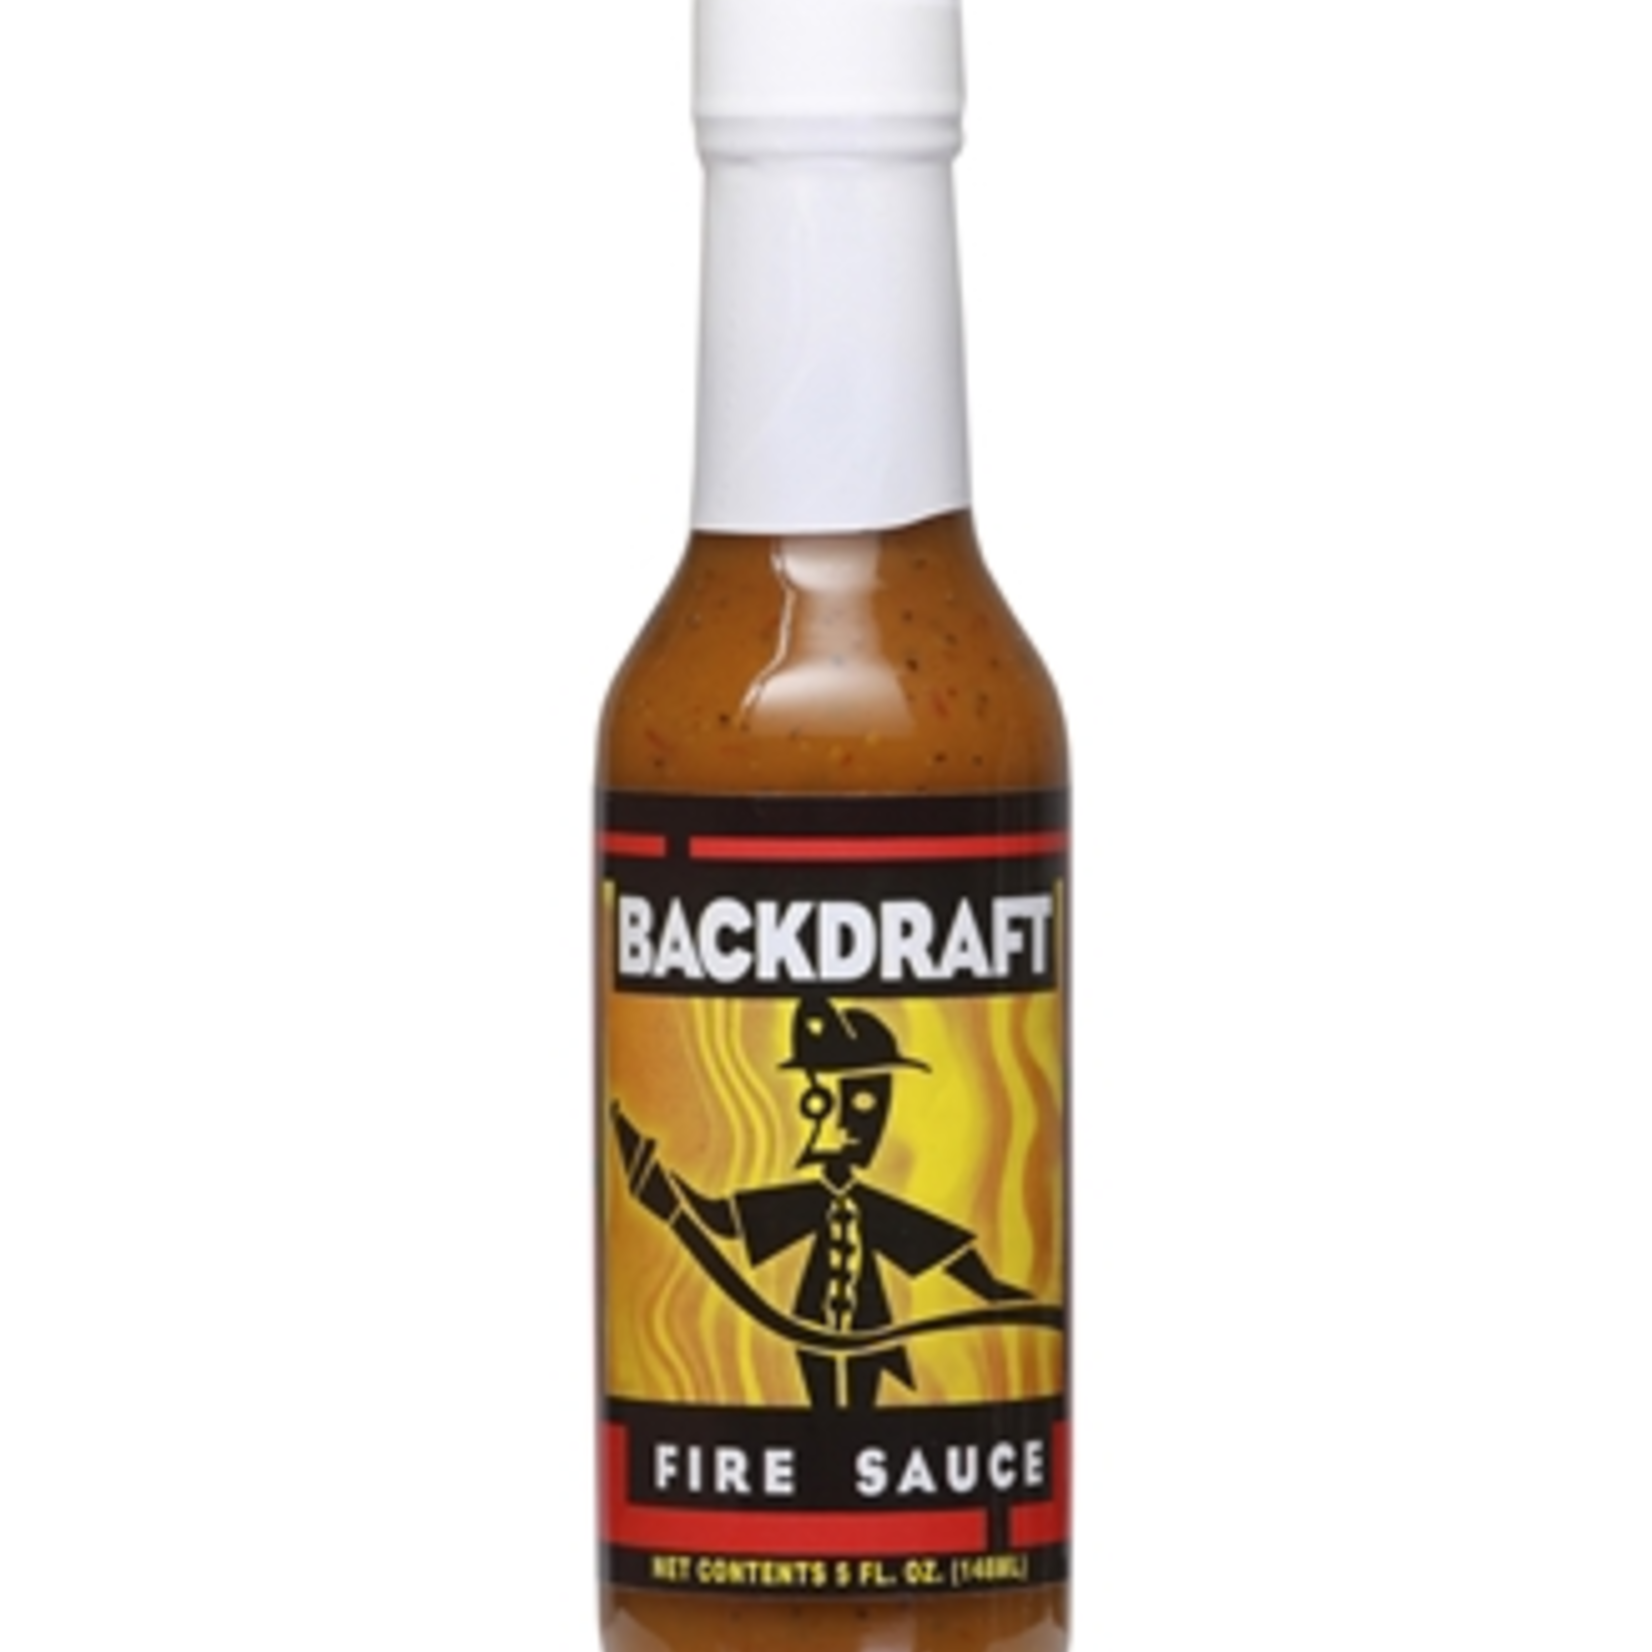 Hot Shots Distributing Backdraft Hot Sauce, 5 oz.